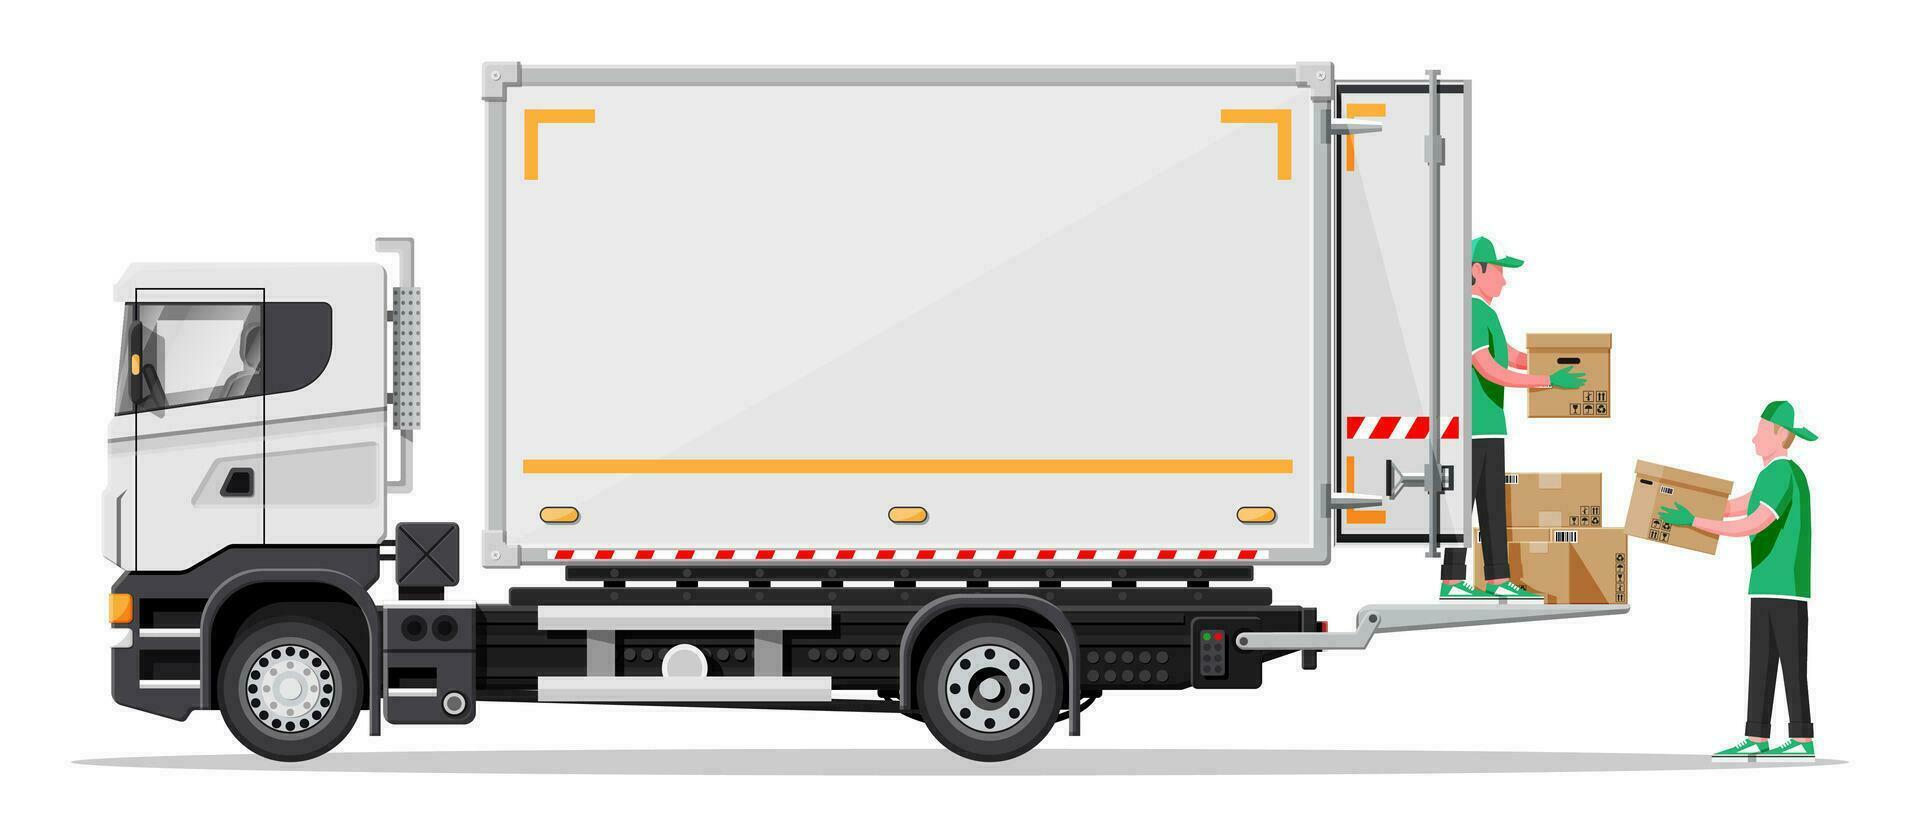 lastbil trailer lastad med kartong lådor förbi flyttare. leverans skåpbil med lugg av lådor. uttrycka leverera tjänster kommersiell lastbil. snabb och fri leverans. frakt logistik. platt vektor illustration